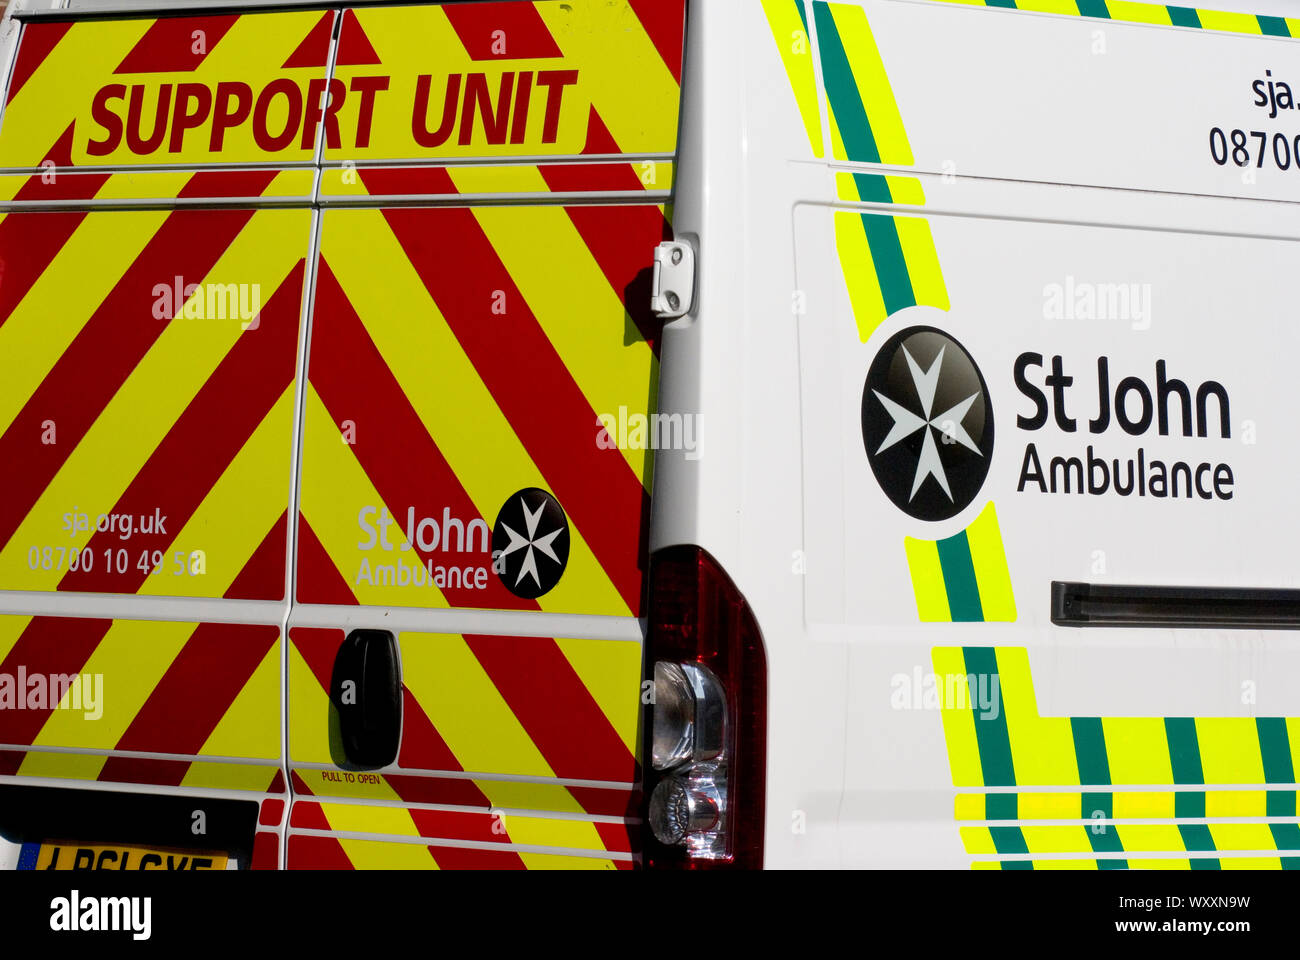 St John Ambulance Support Unit Stock Photo